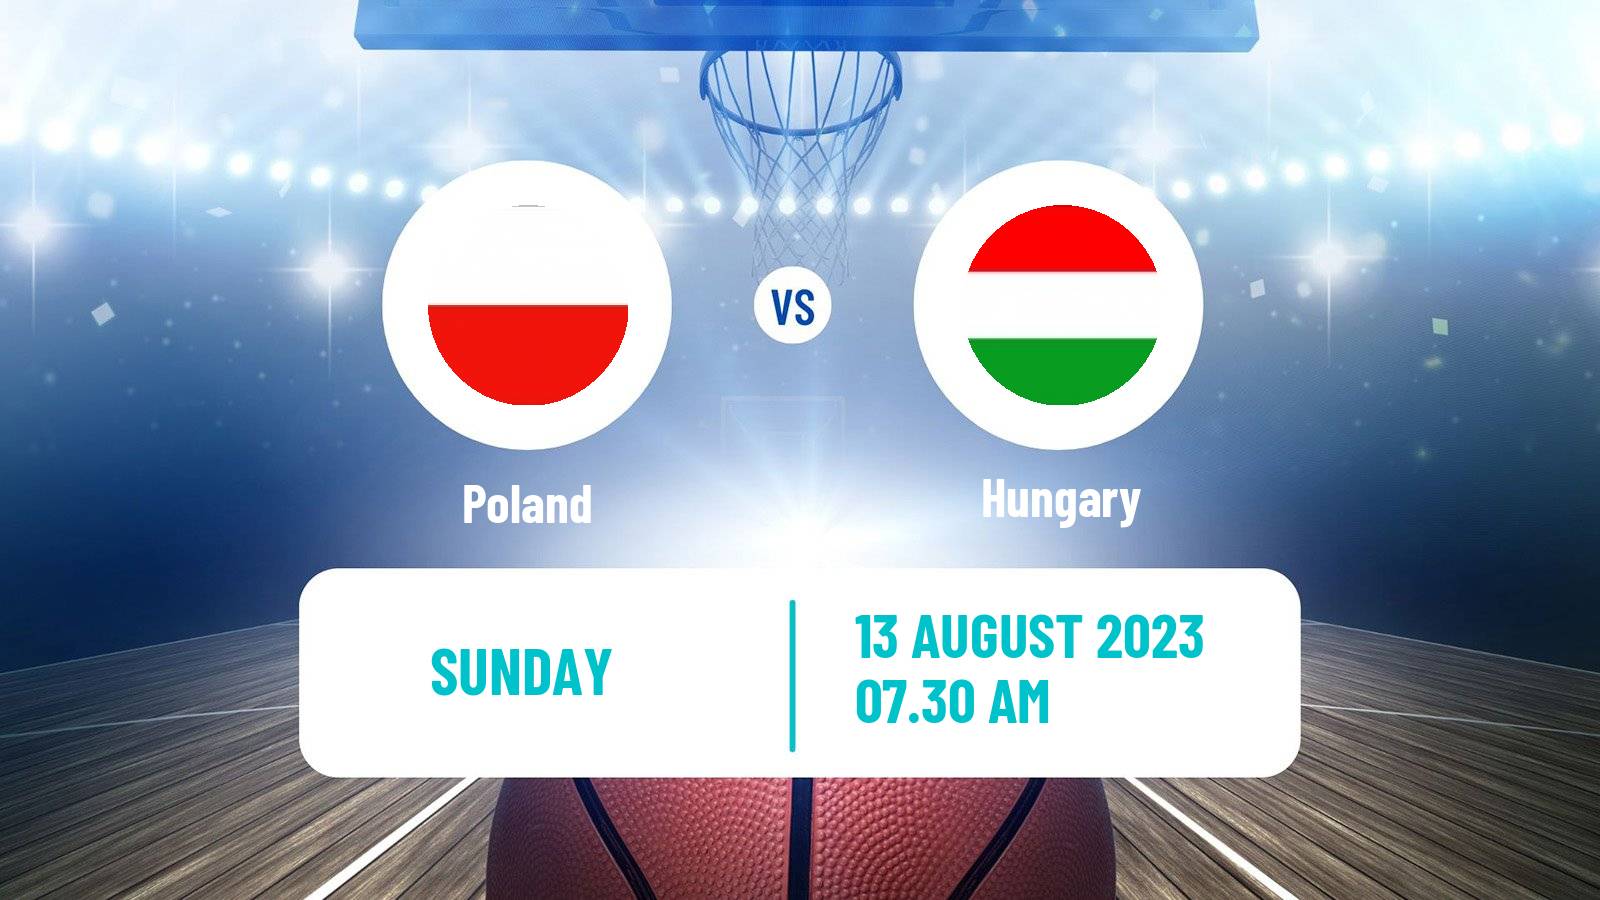 Basketball Olympic Games - Basketball Poland - Hungary